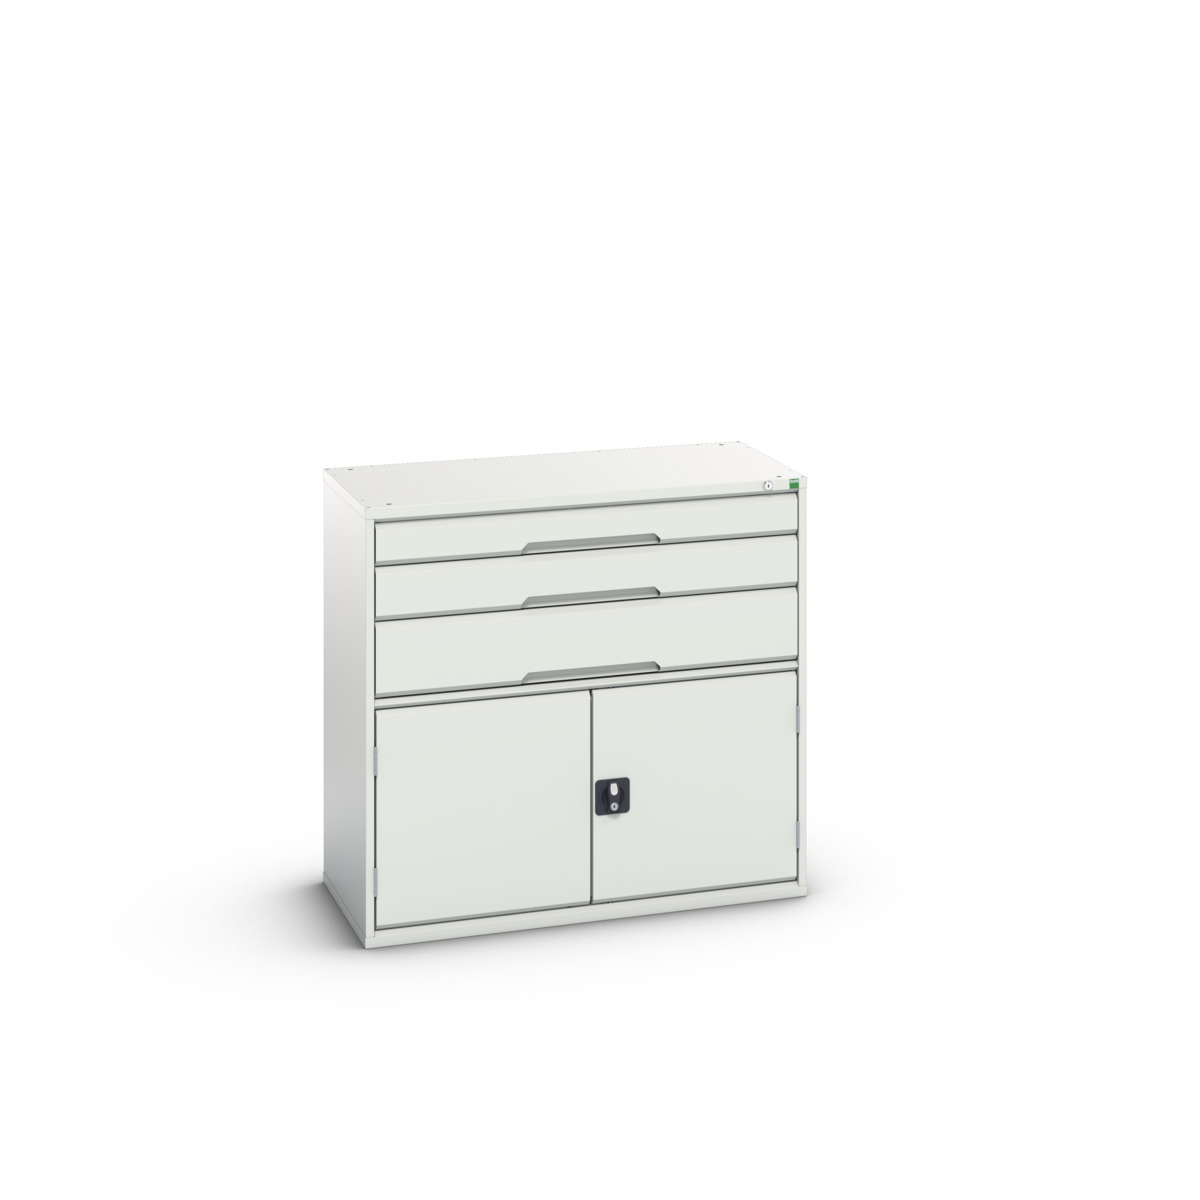 16925261.16 - verso drawer-door cabinet